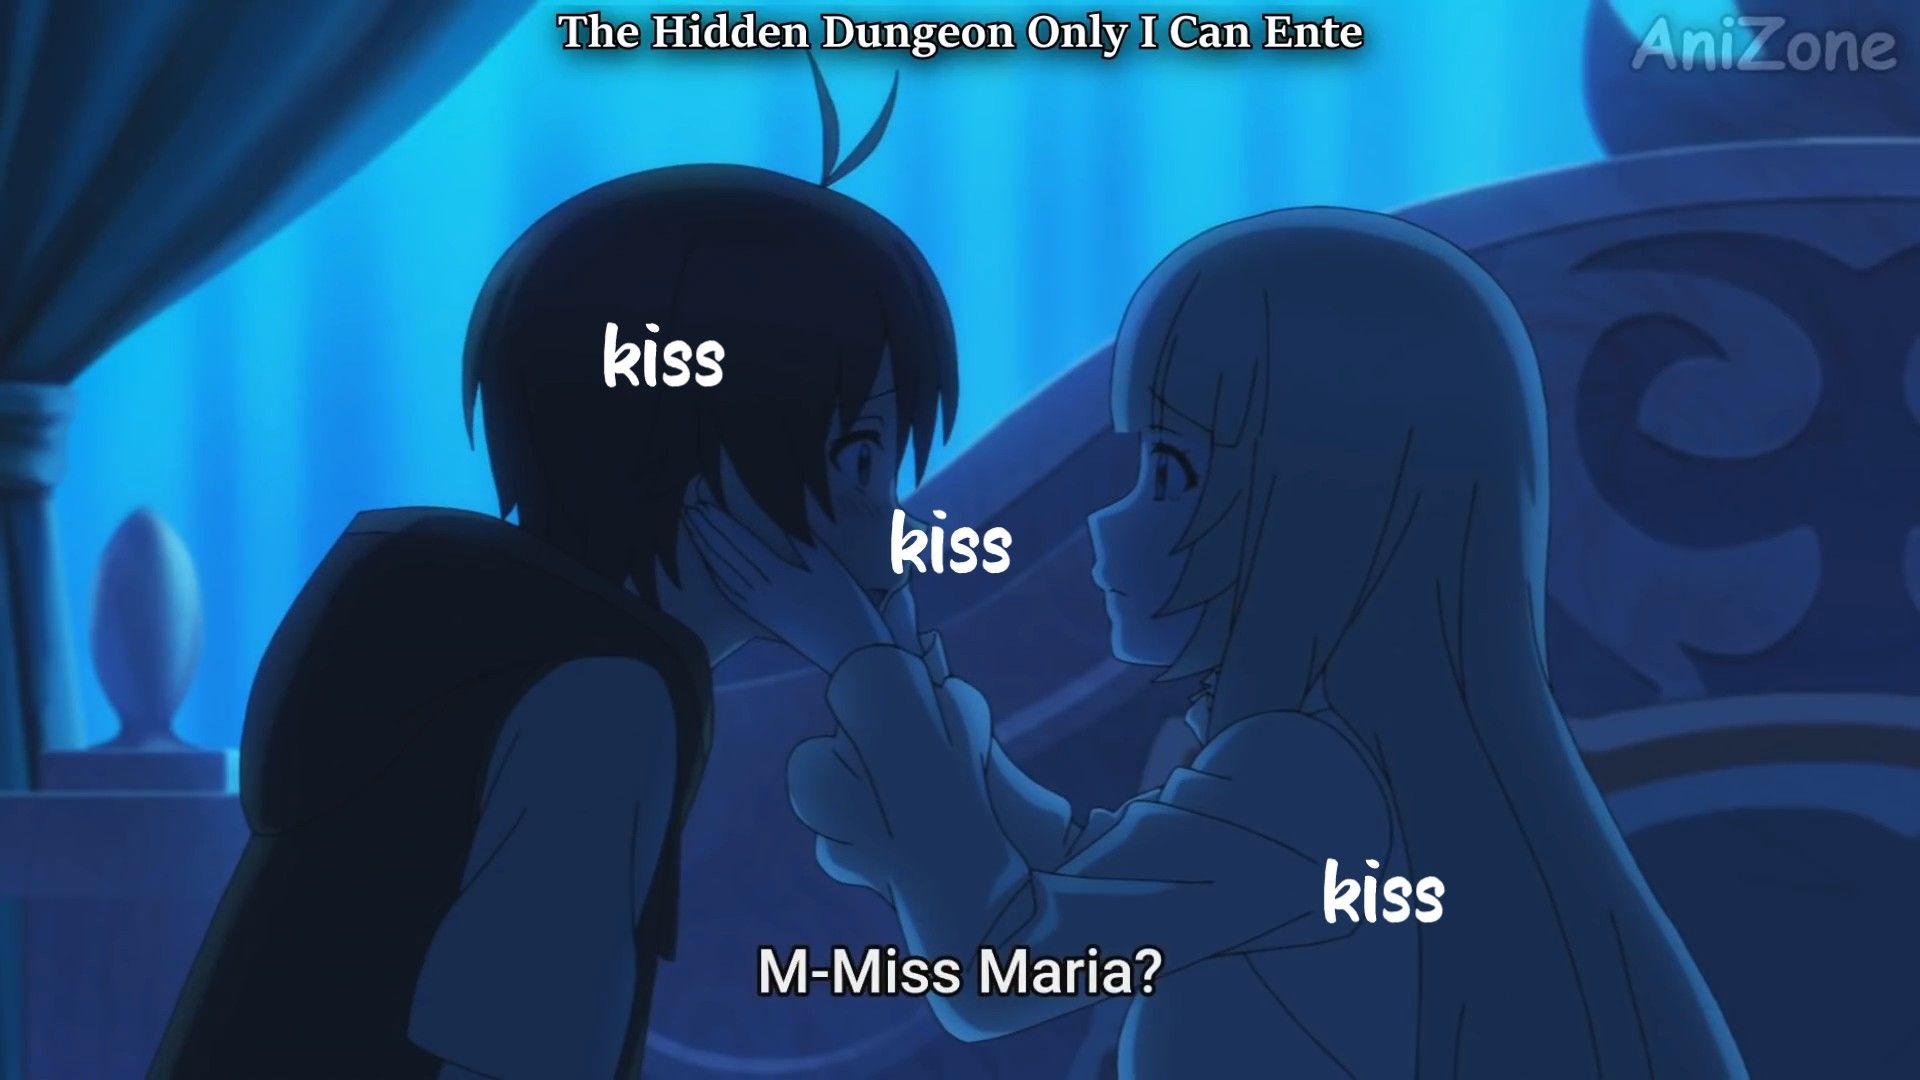 Anime Kiss Passionate Golden Time Couple GIF  GIFDBcom